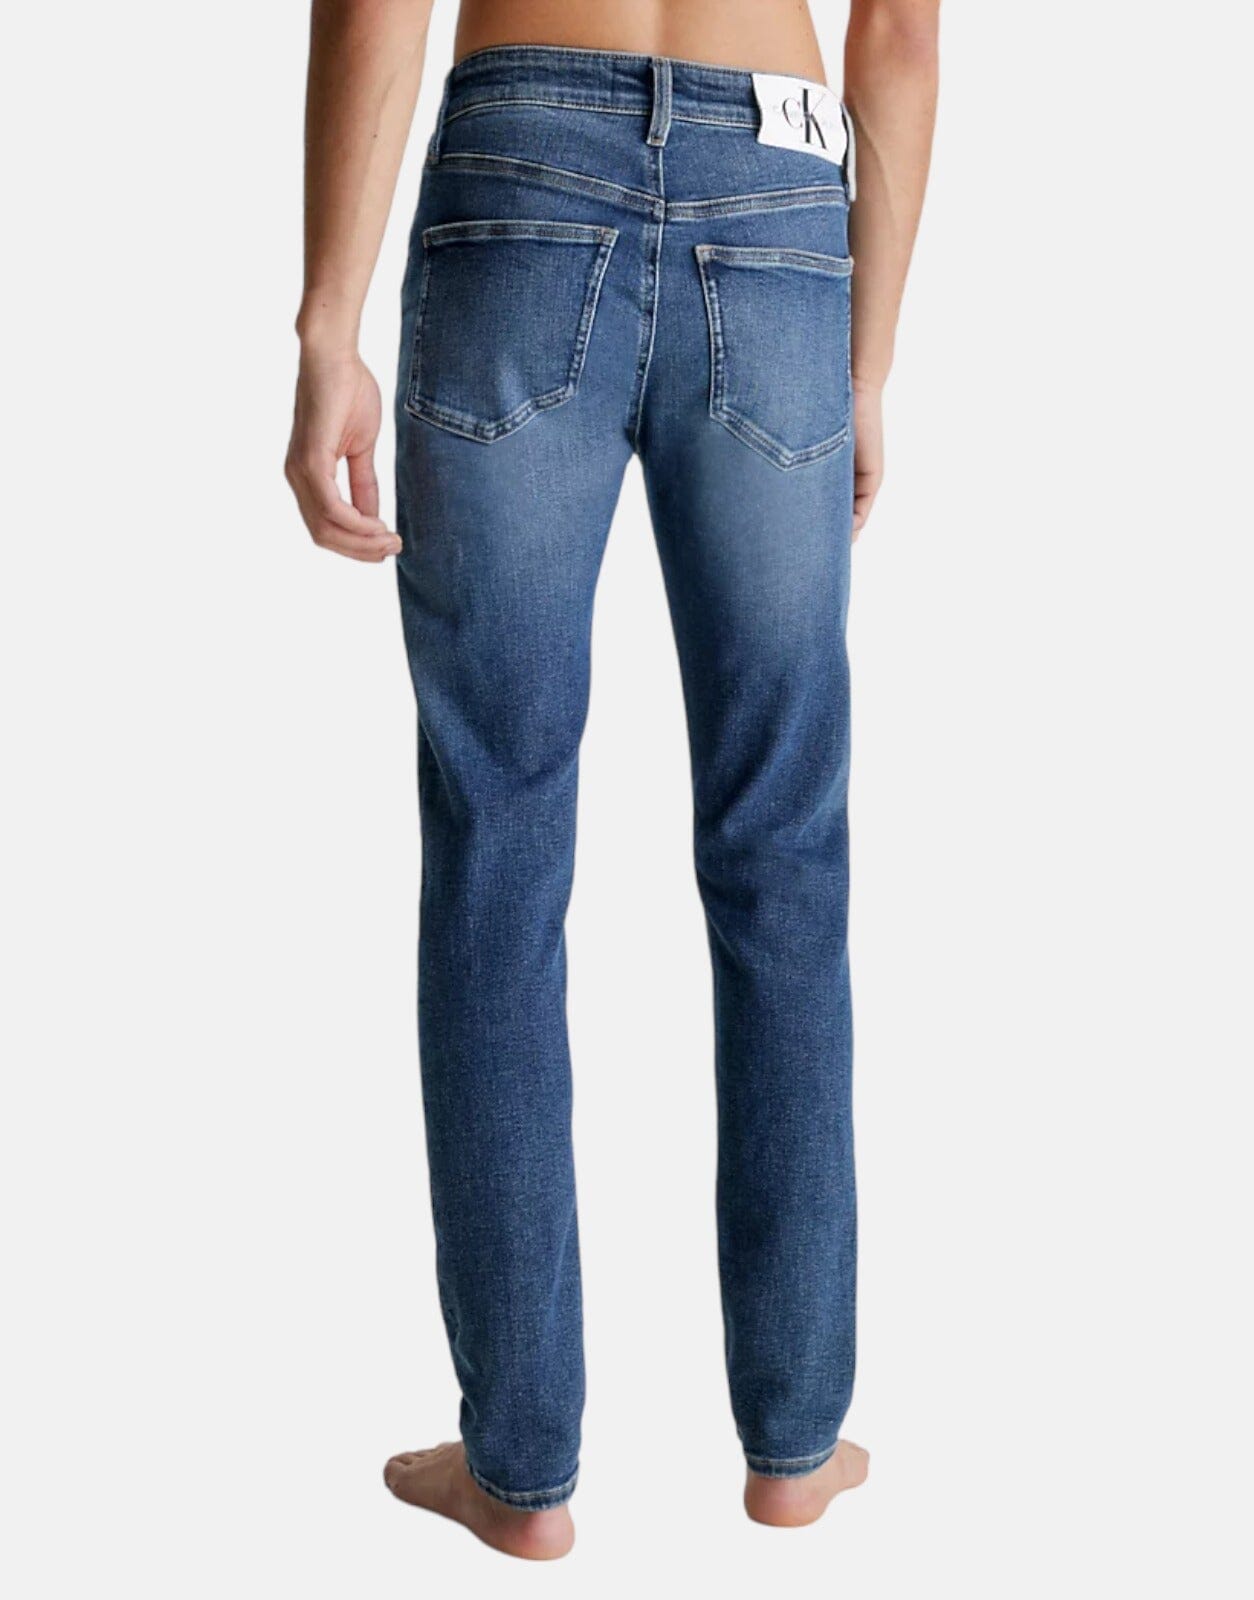 Calvin Klein Skinny Denim Dark Wash Jeans - Subwear